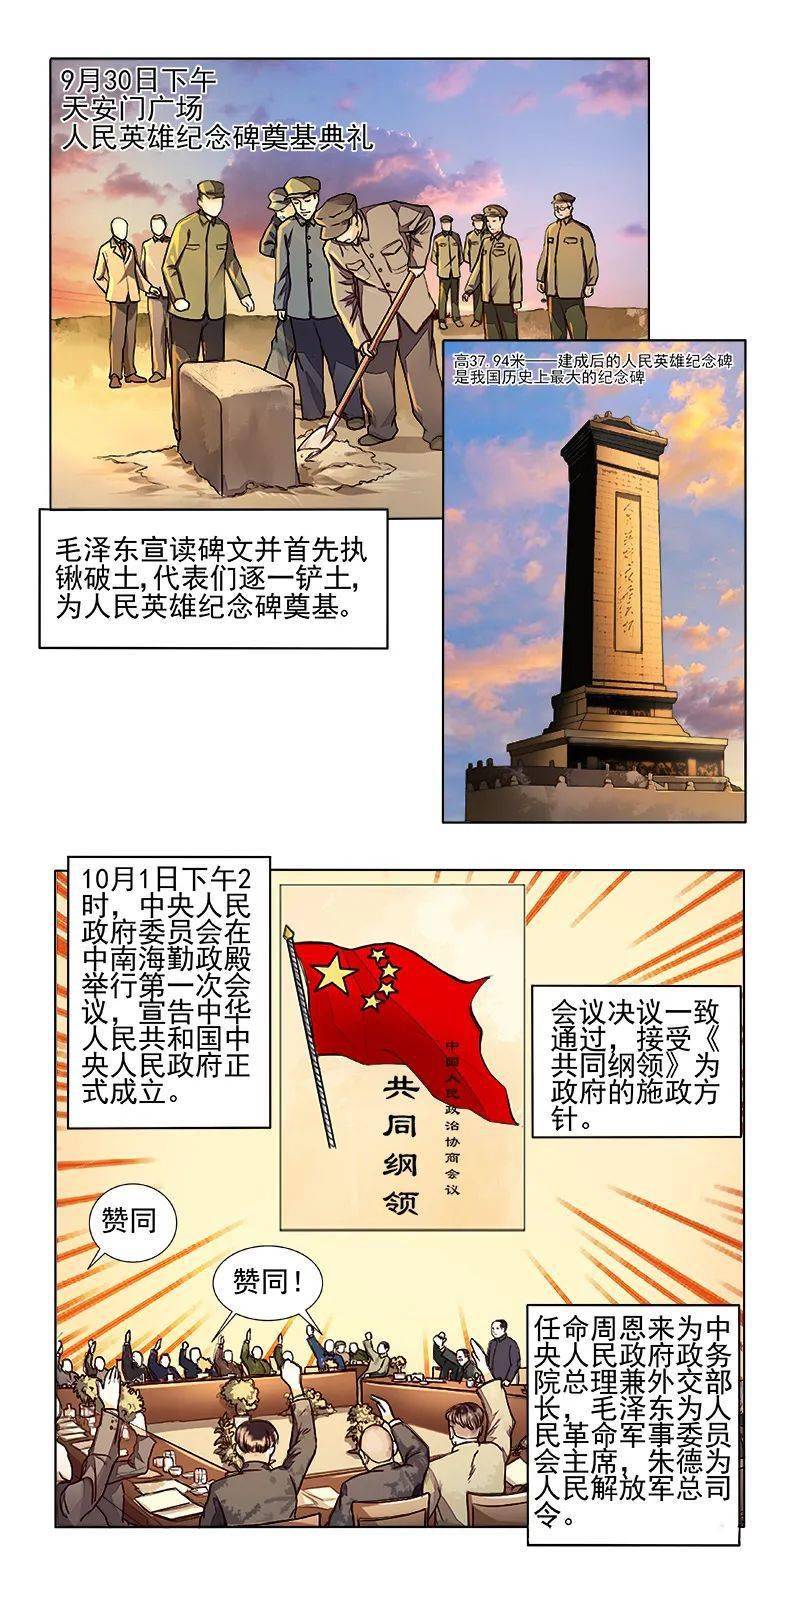 【"四史"学习】漫画新中国史:开国大典